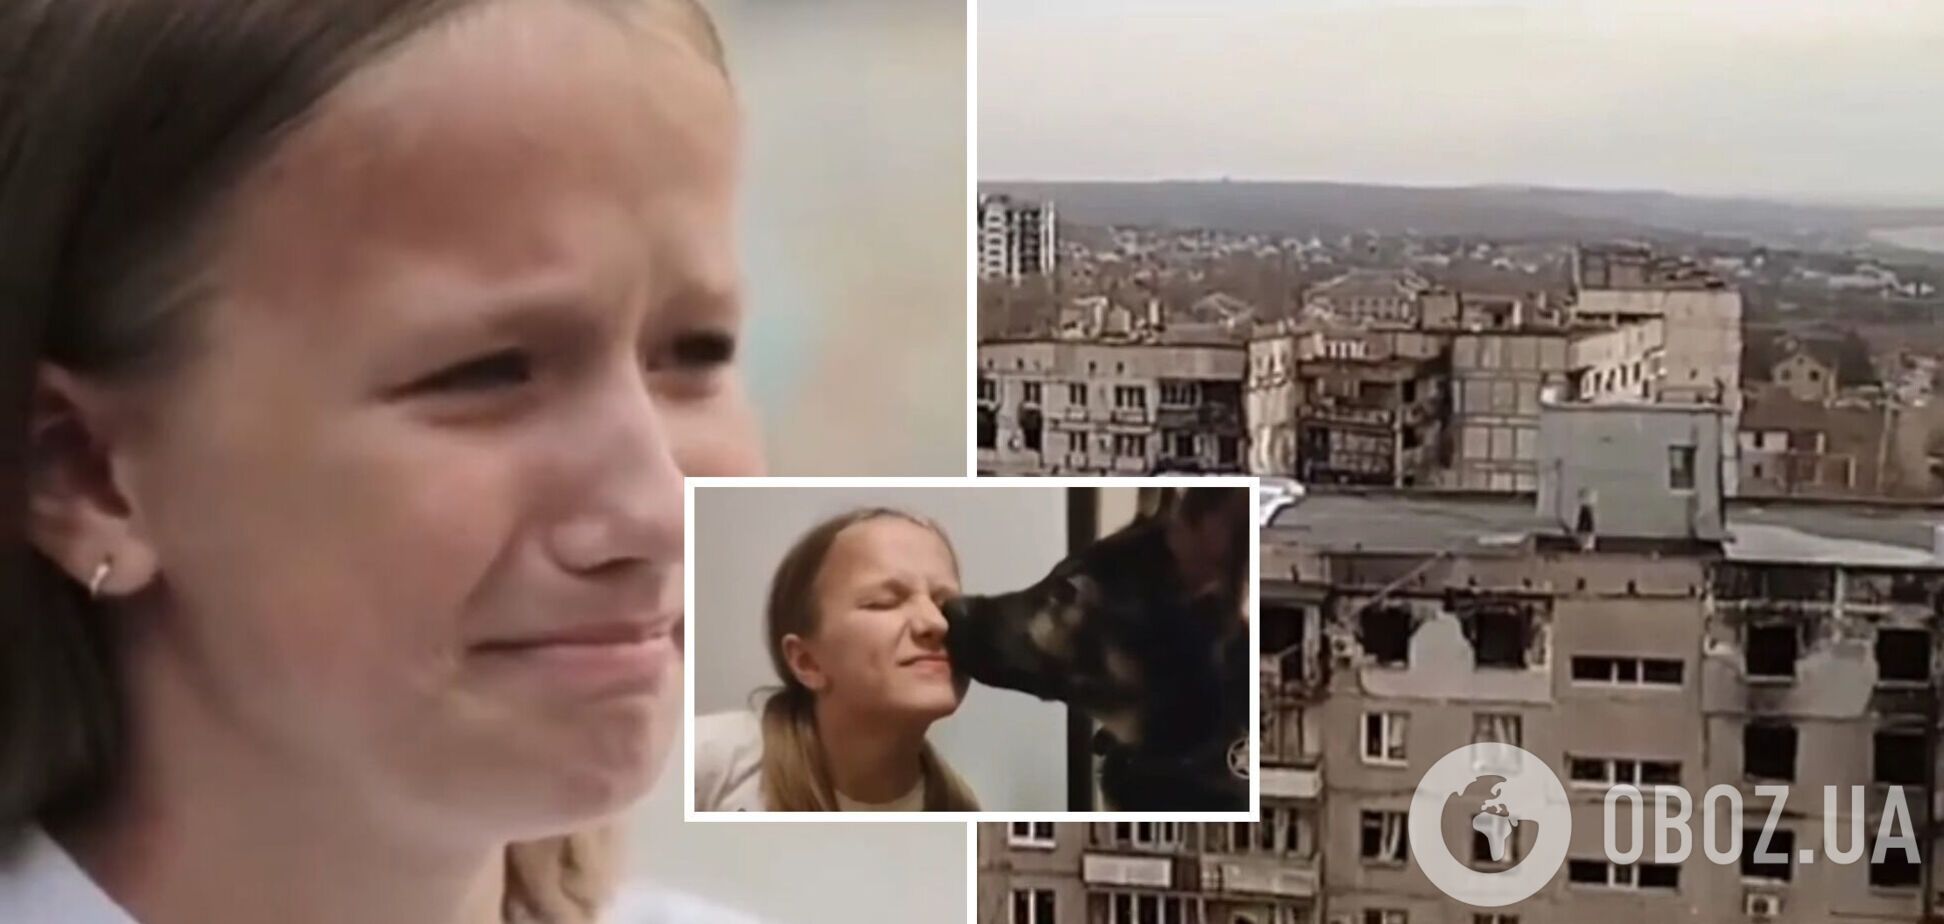 'Эта страна разбомбила мой город': девочка из Мариуполя рассказала, как РФ разрушила ее жизнь. Видео